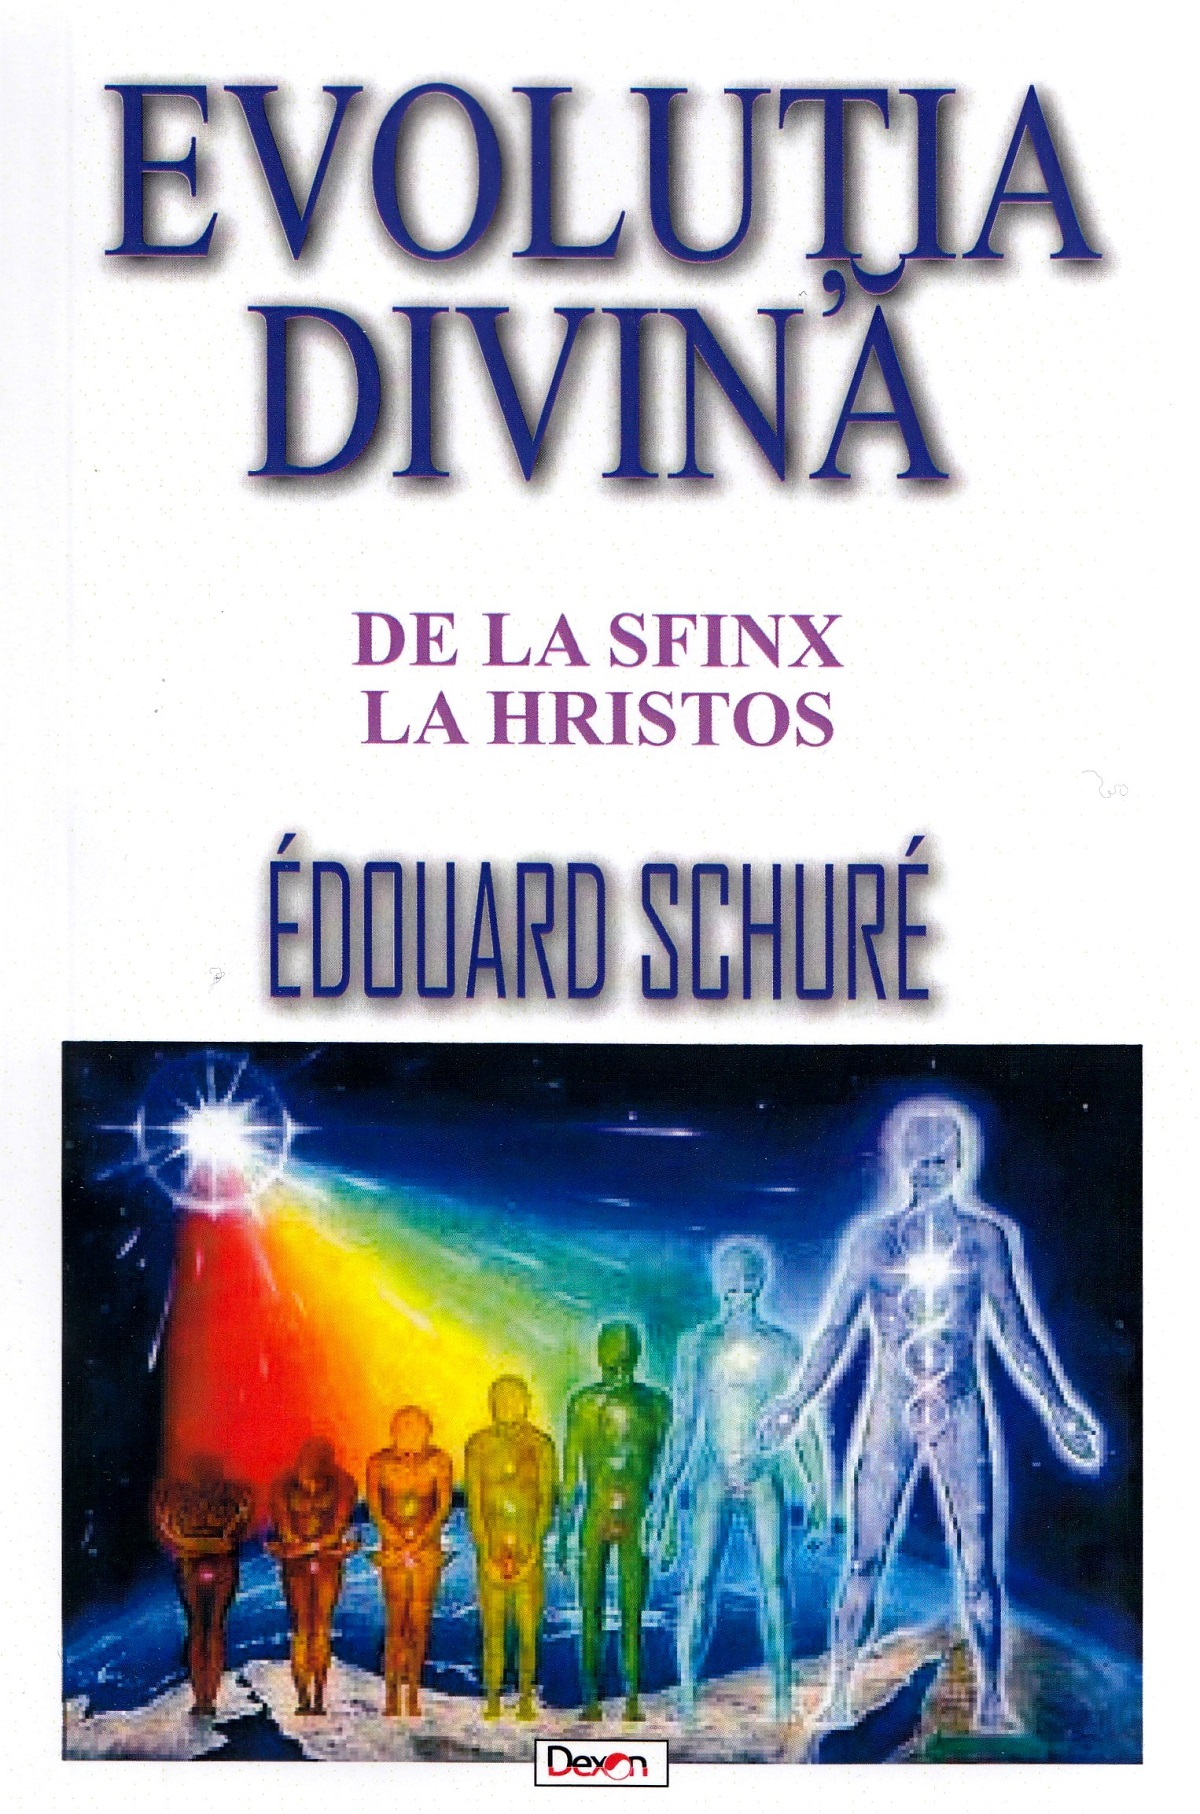 Evolutia divina - Edouard Schure